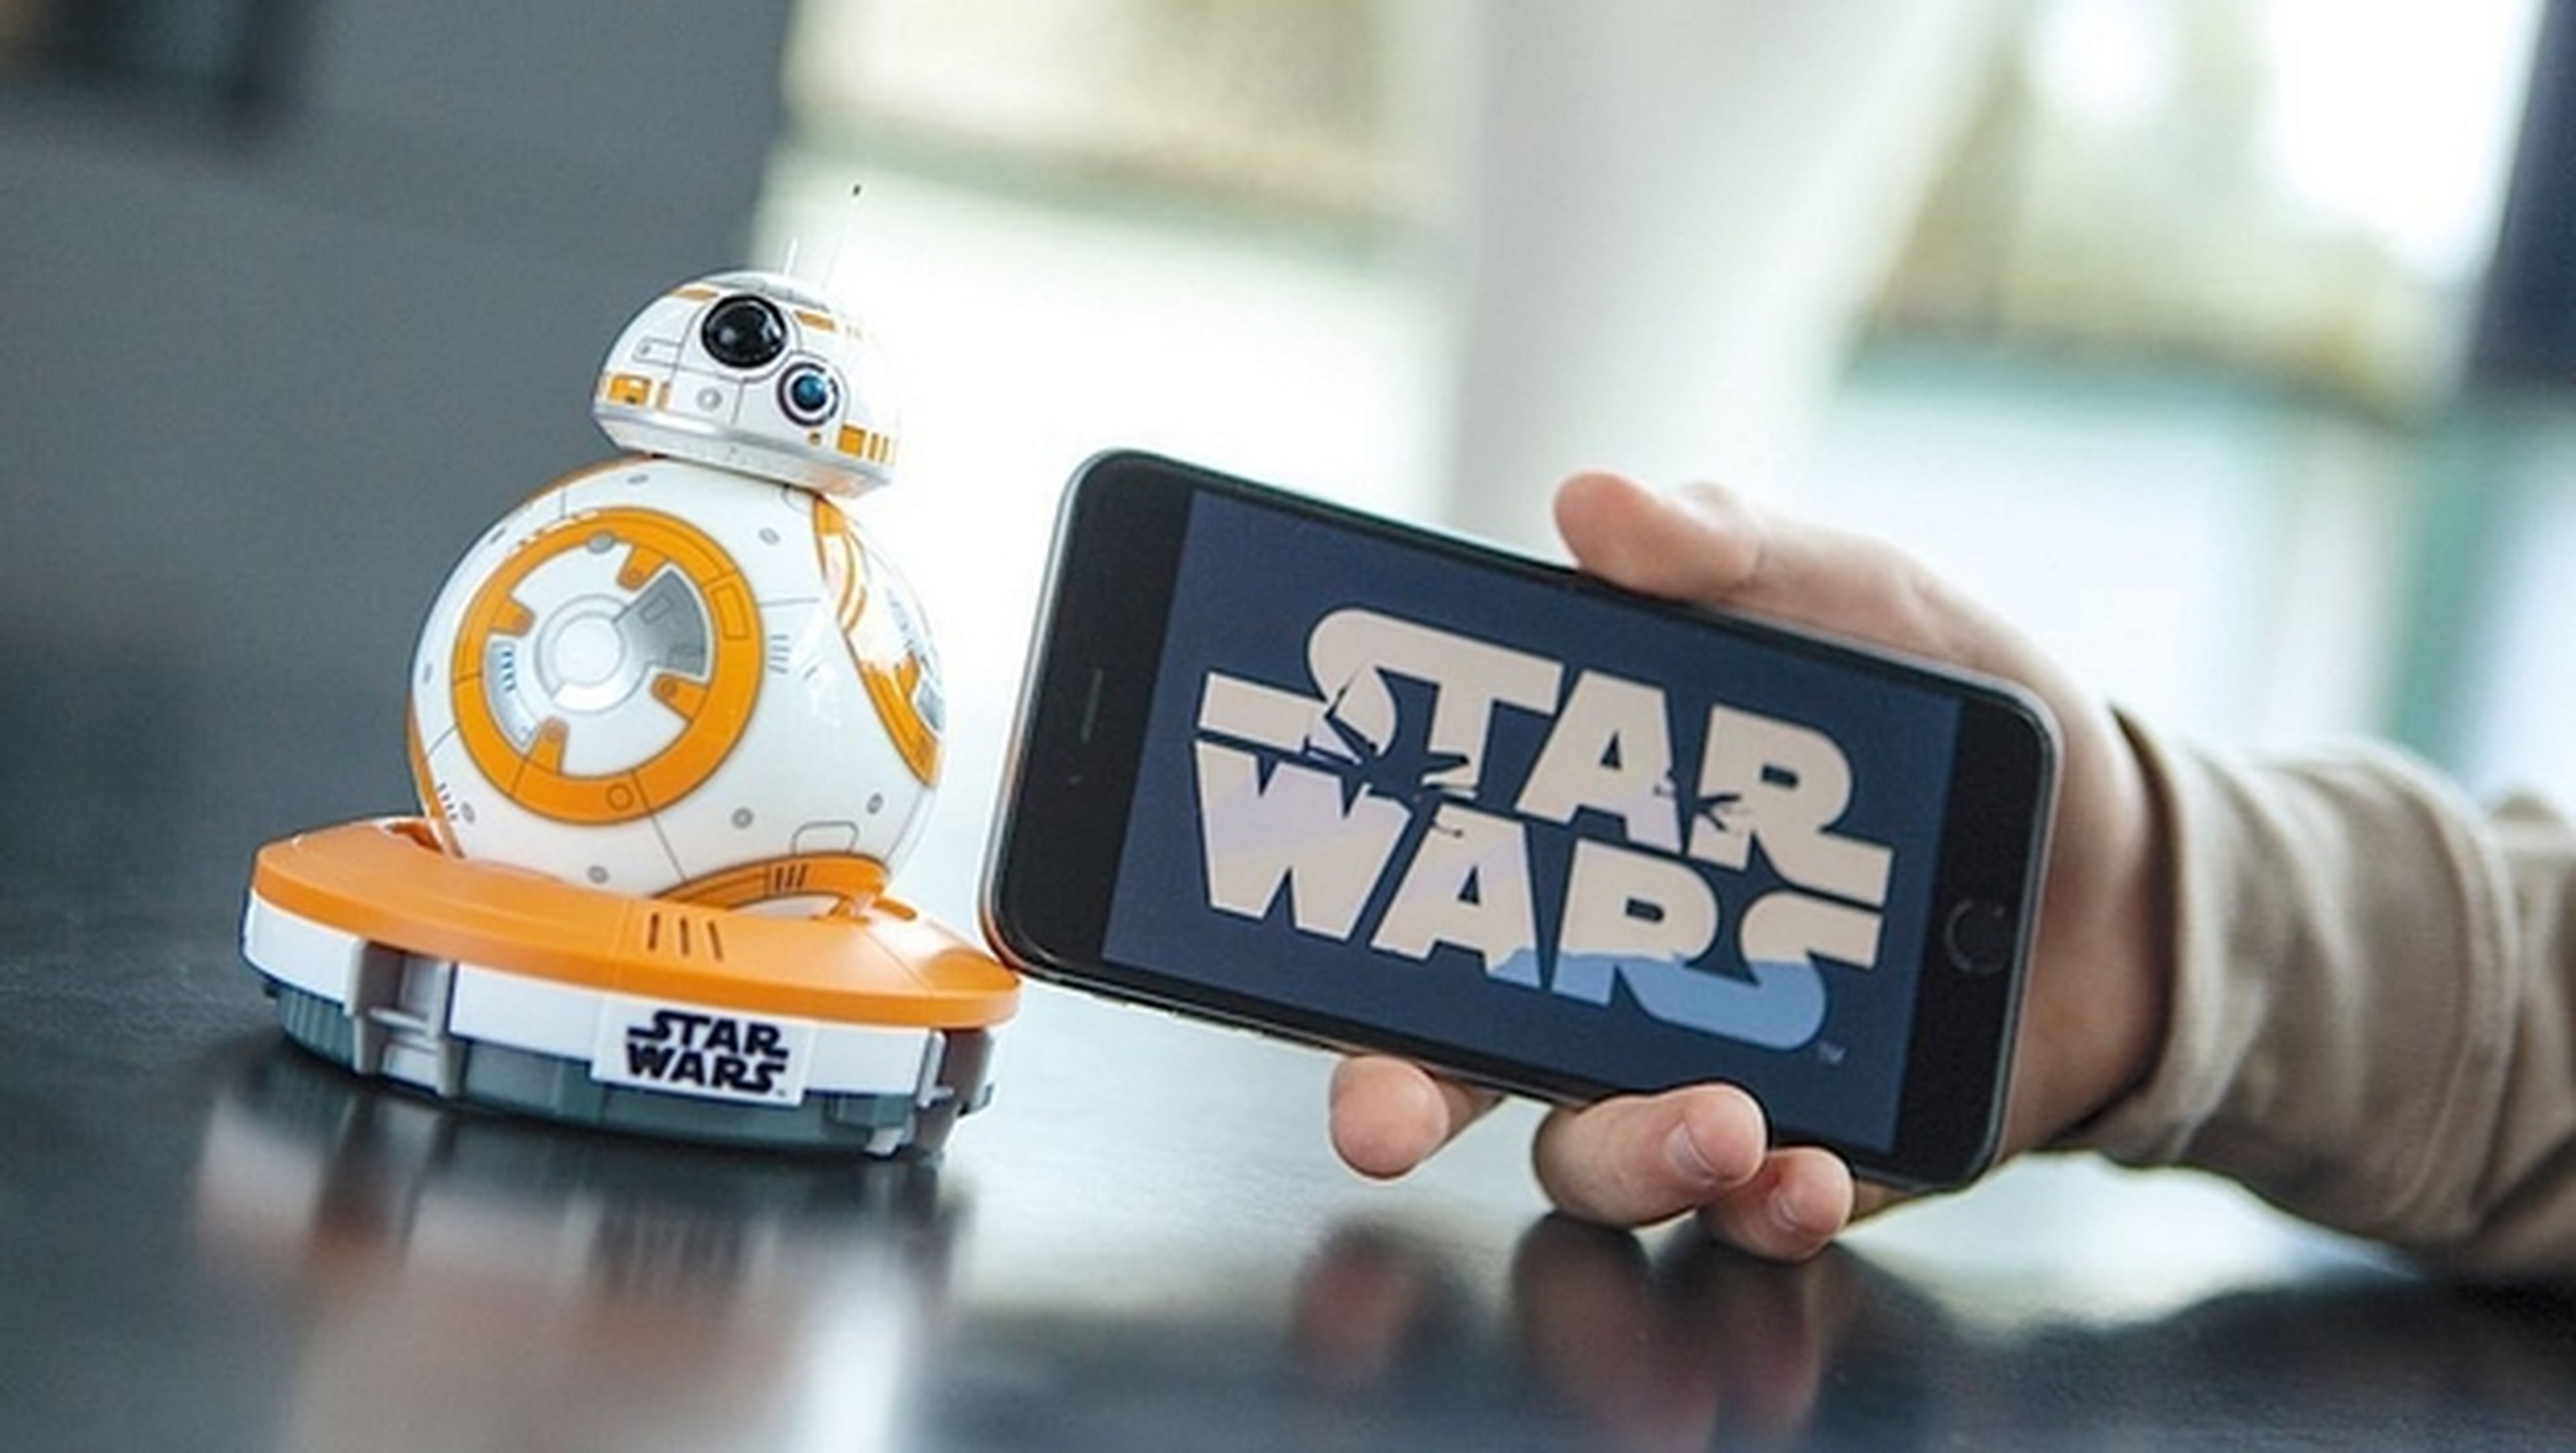 El robot rodante BB-8 de Star Wars, en tu casa gracias a Sphero.